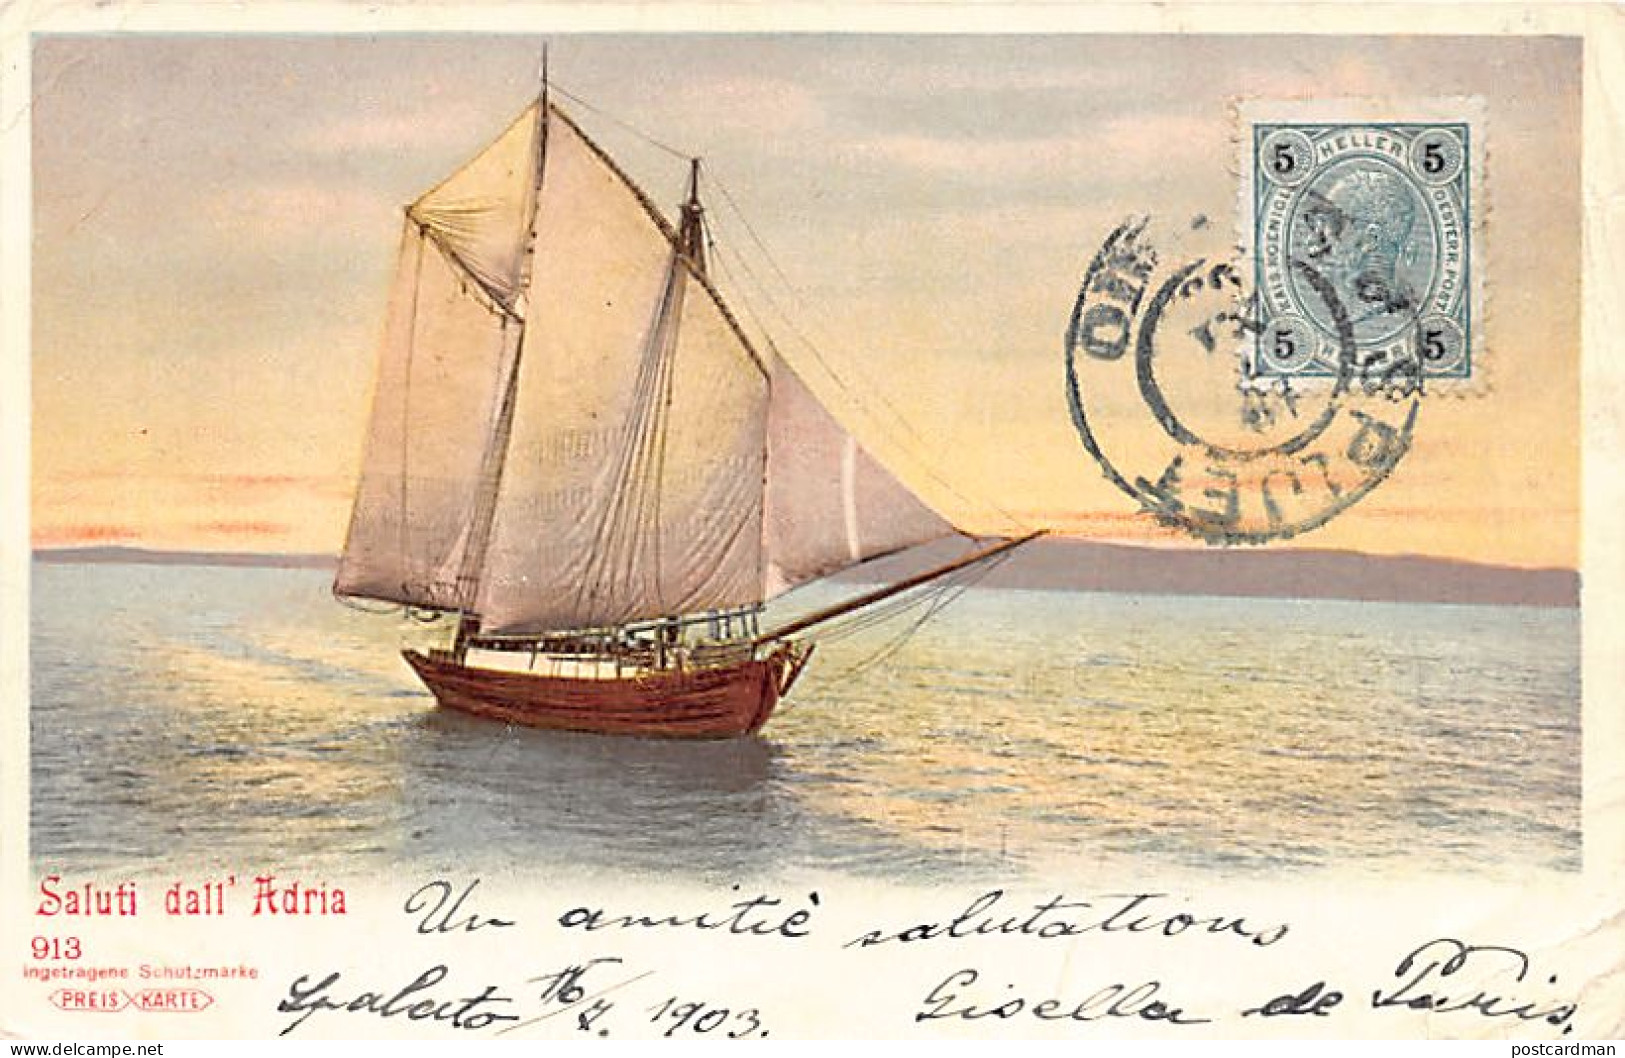 Croatia - Saluti Dall' Adria - Sailing Ship On The Adriatic Sa - Publ. Preis Karte 913 - Croatia